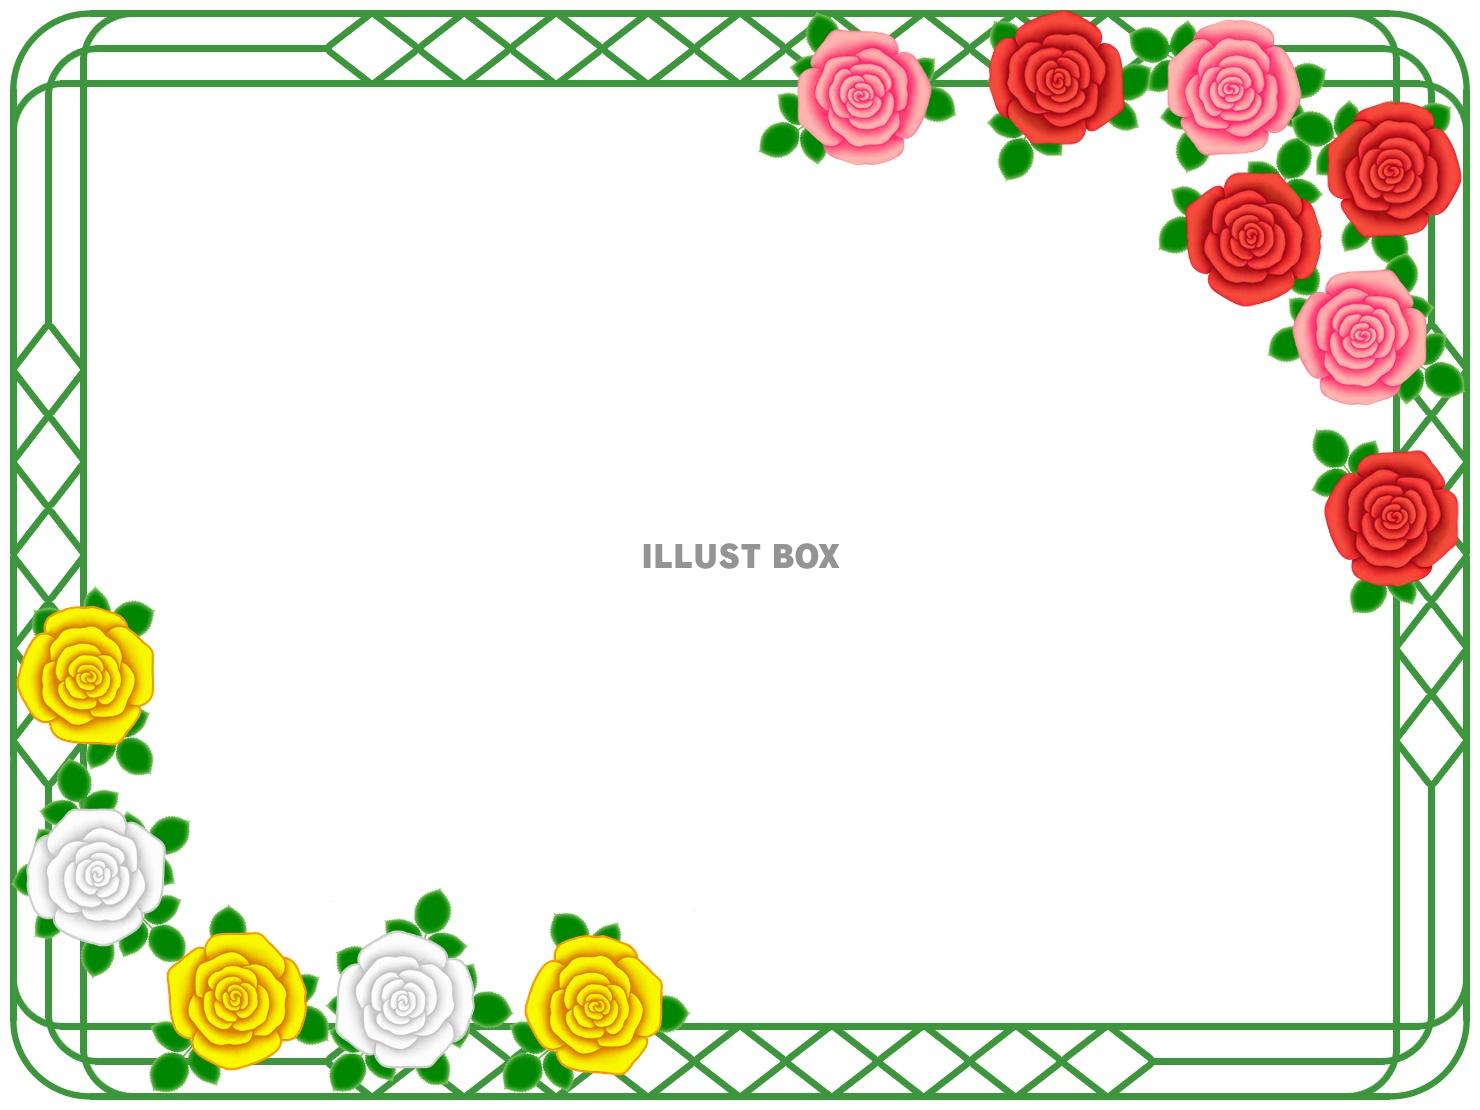 薔薇の花フレーム花模様飾り枠素材イラスト。ベクターあり